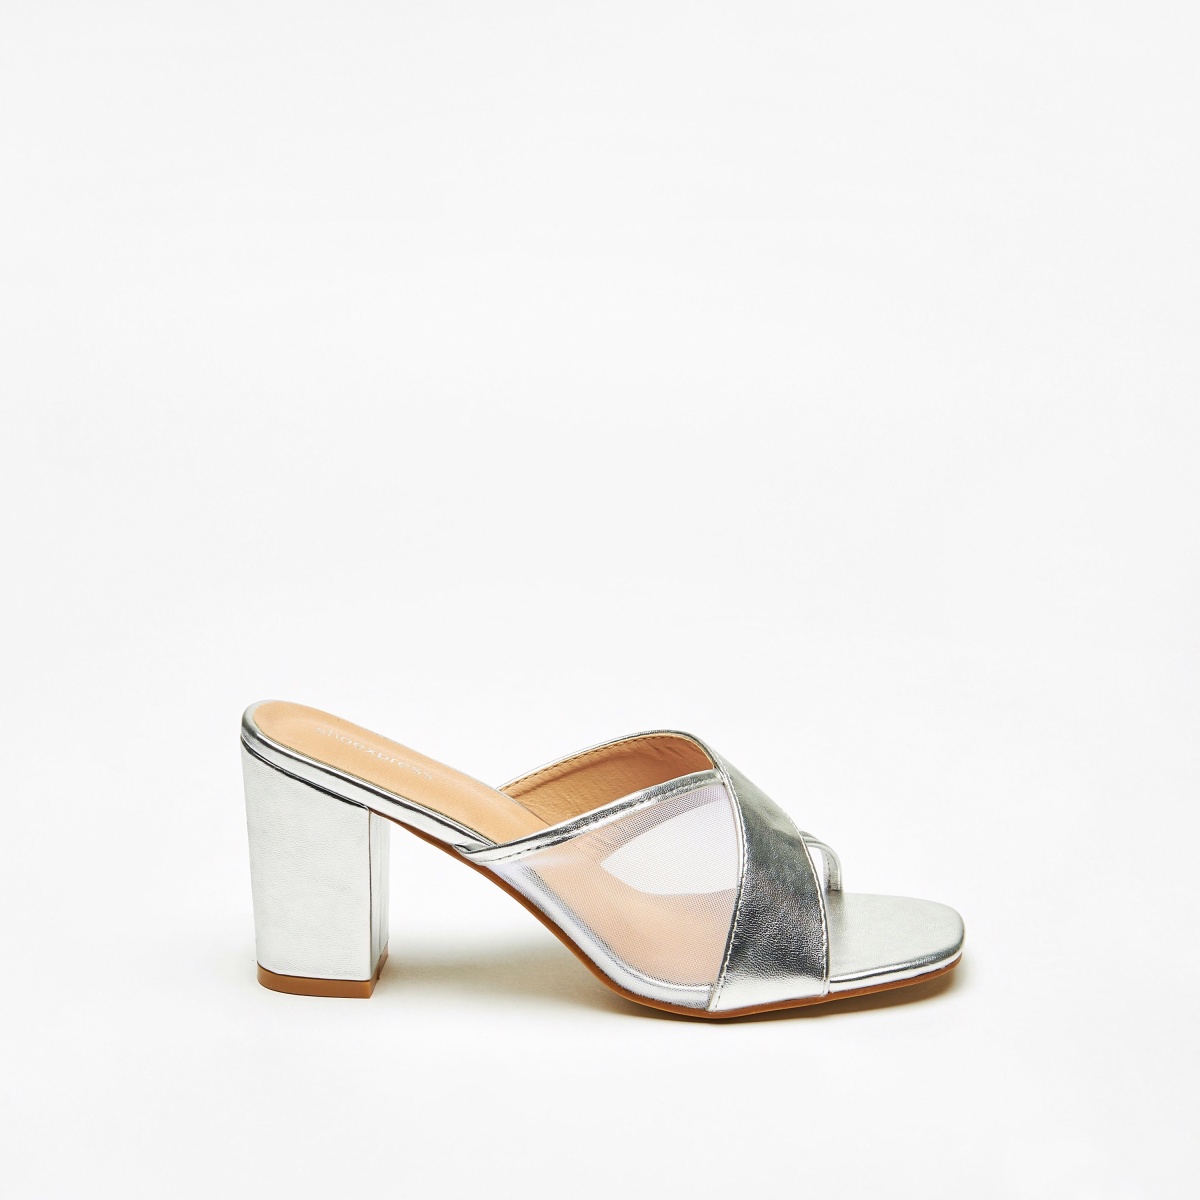 Block-heeled tie-strap sandals - Light beige/White - Ladies | H&M IN